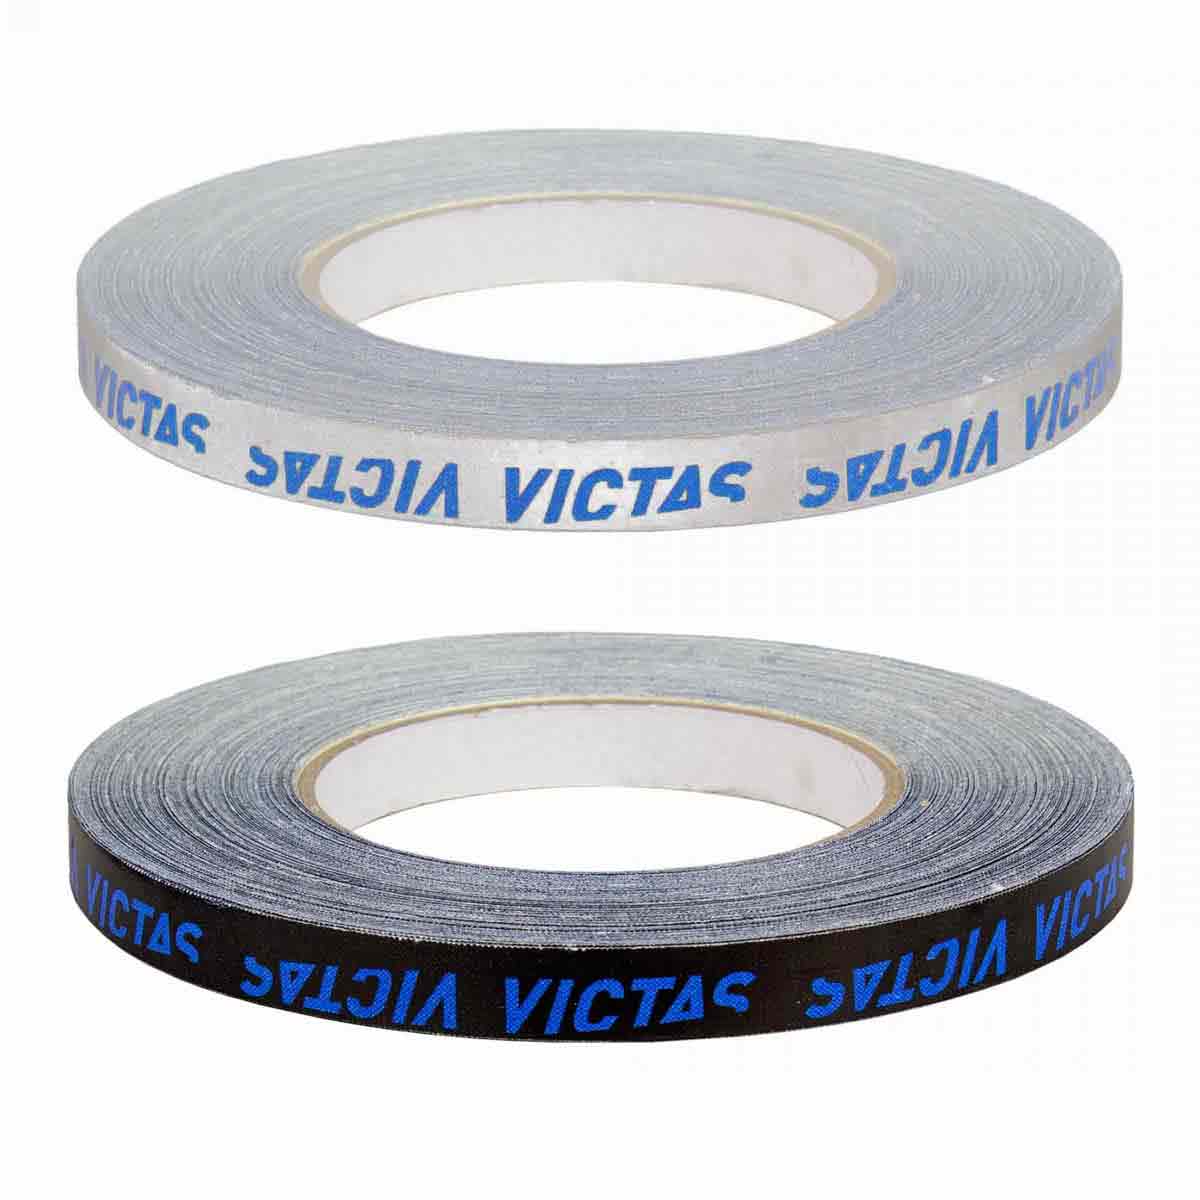 Victas Kantenband 12mm/50m silber/blau